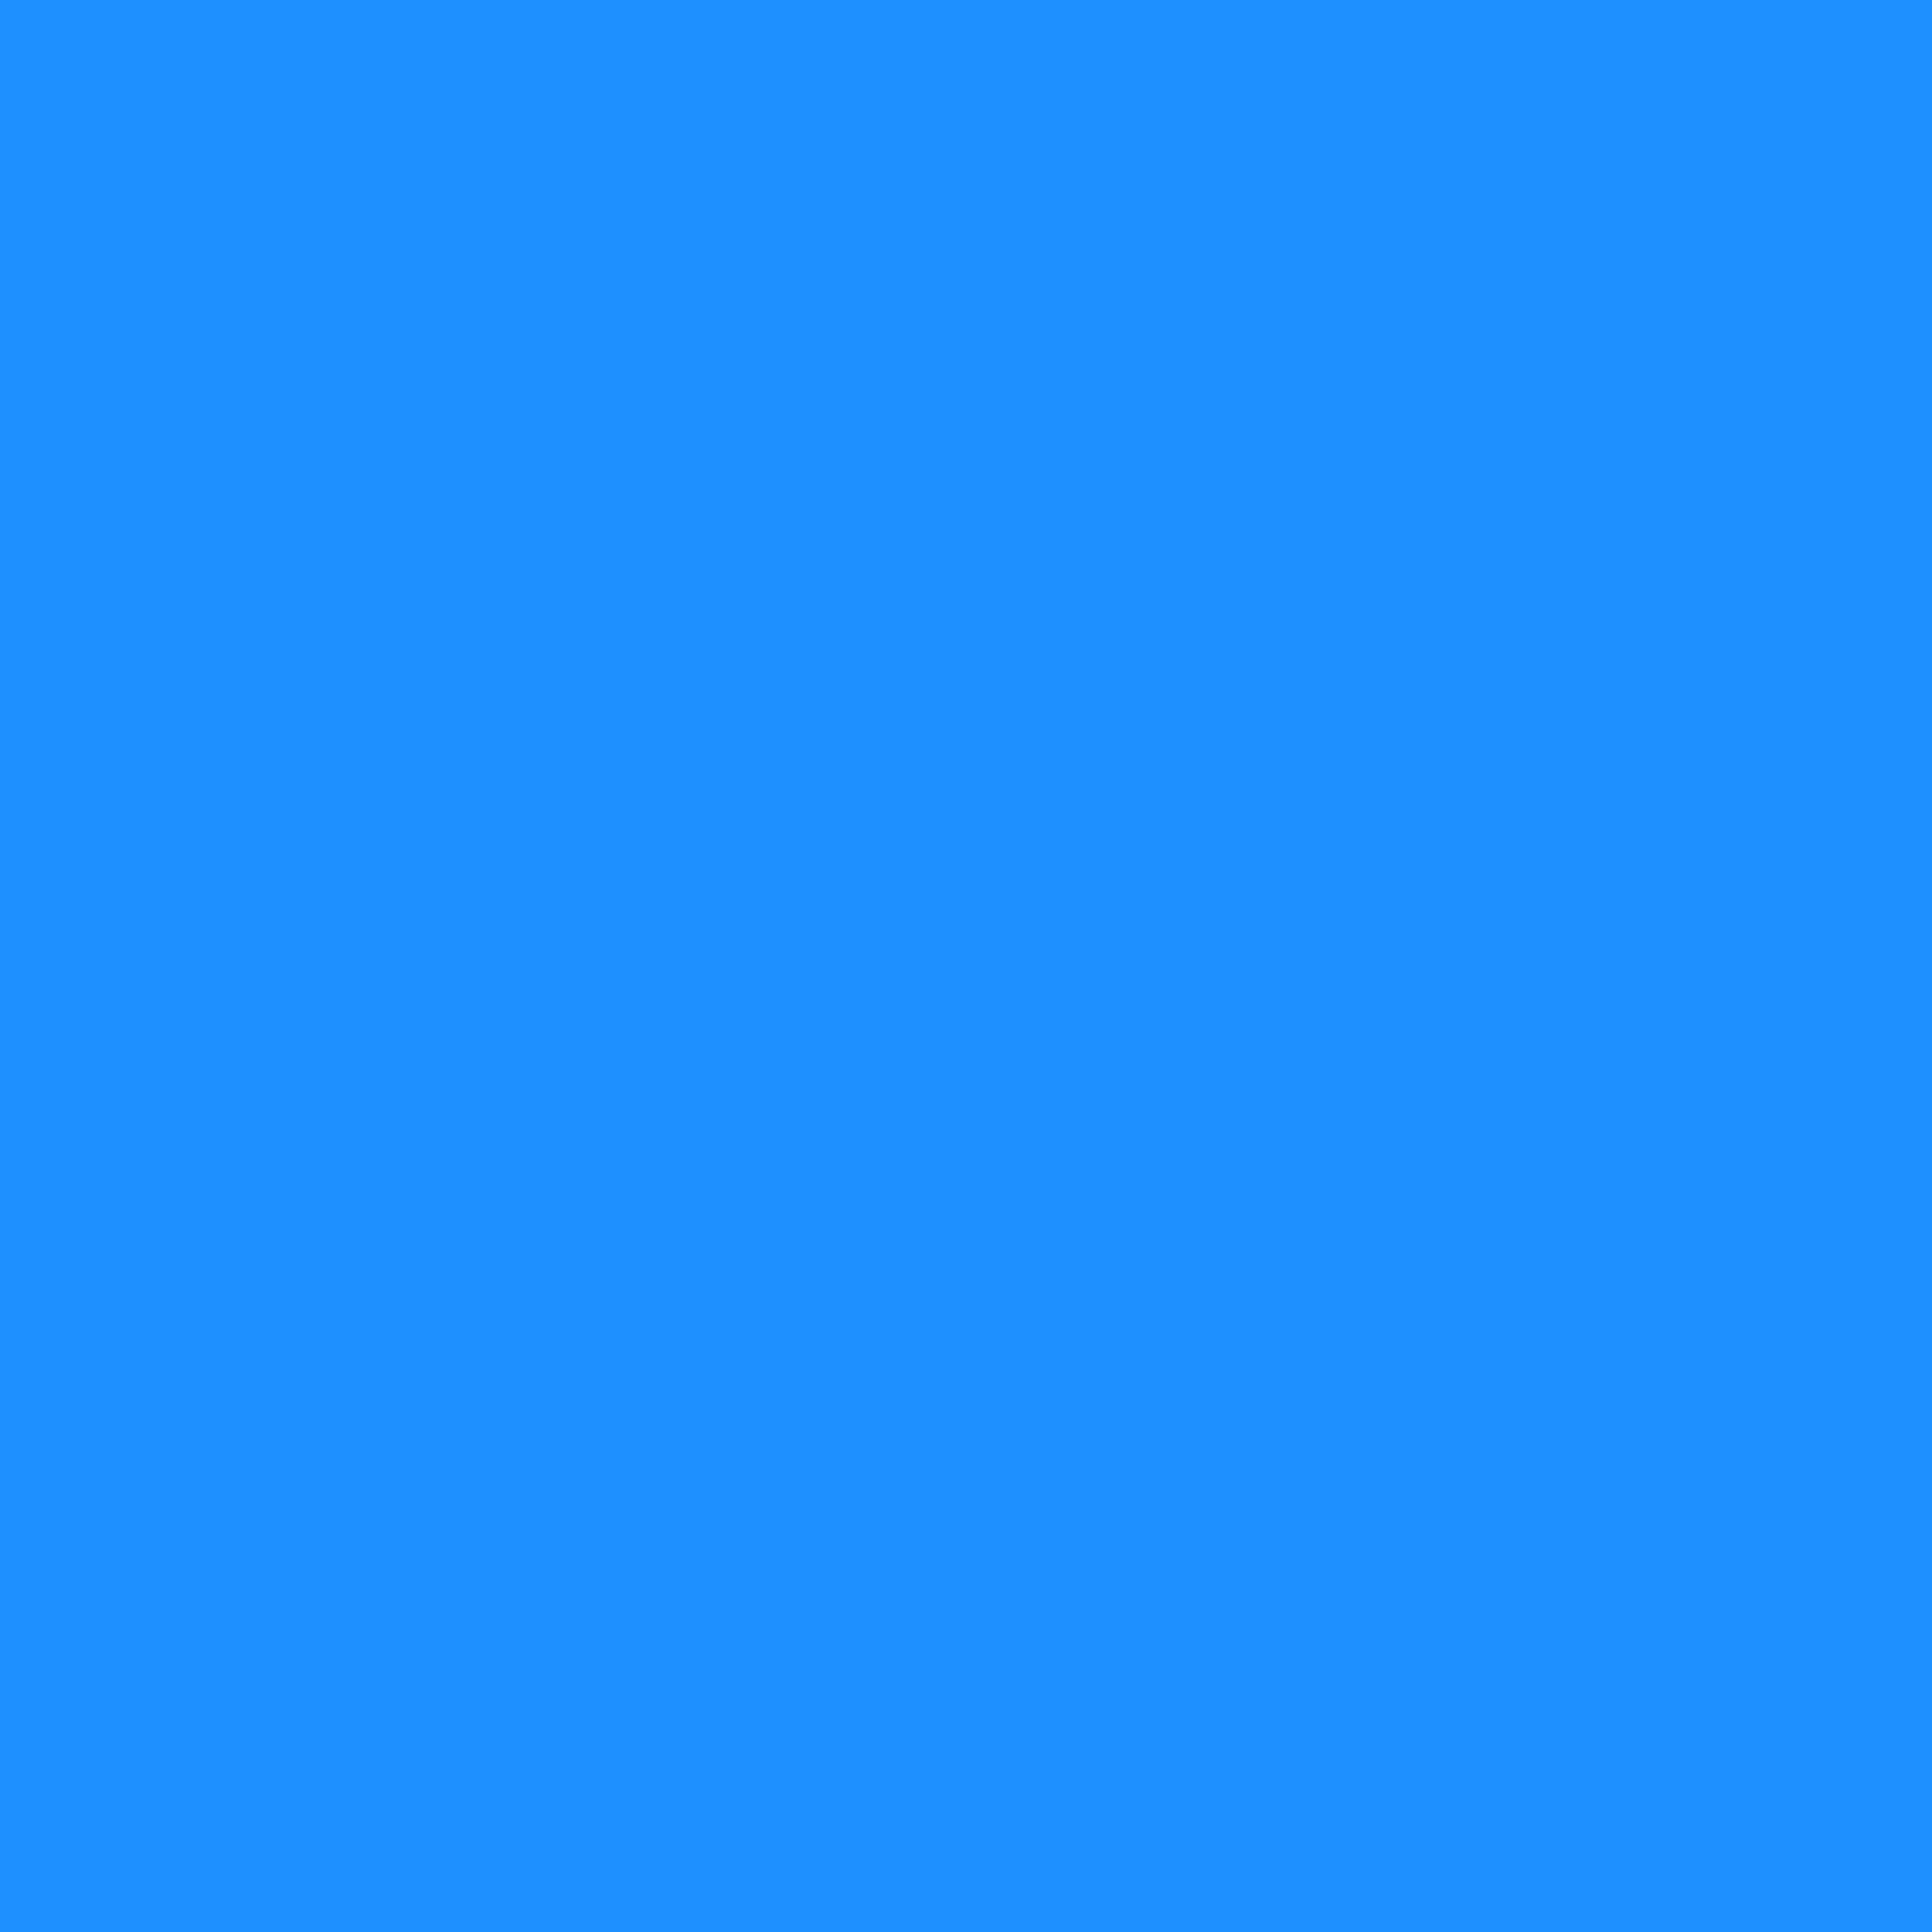 2732x2732 Dodger Blue Solid Color Background